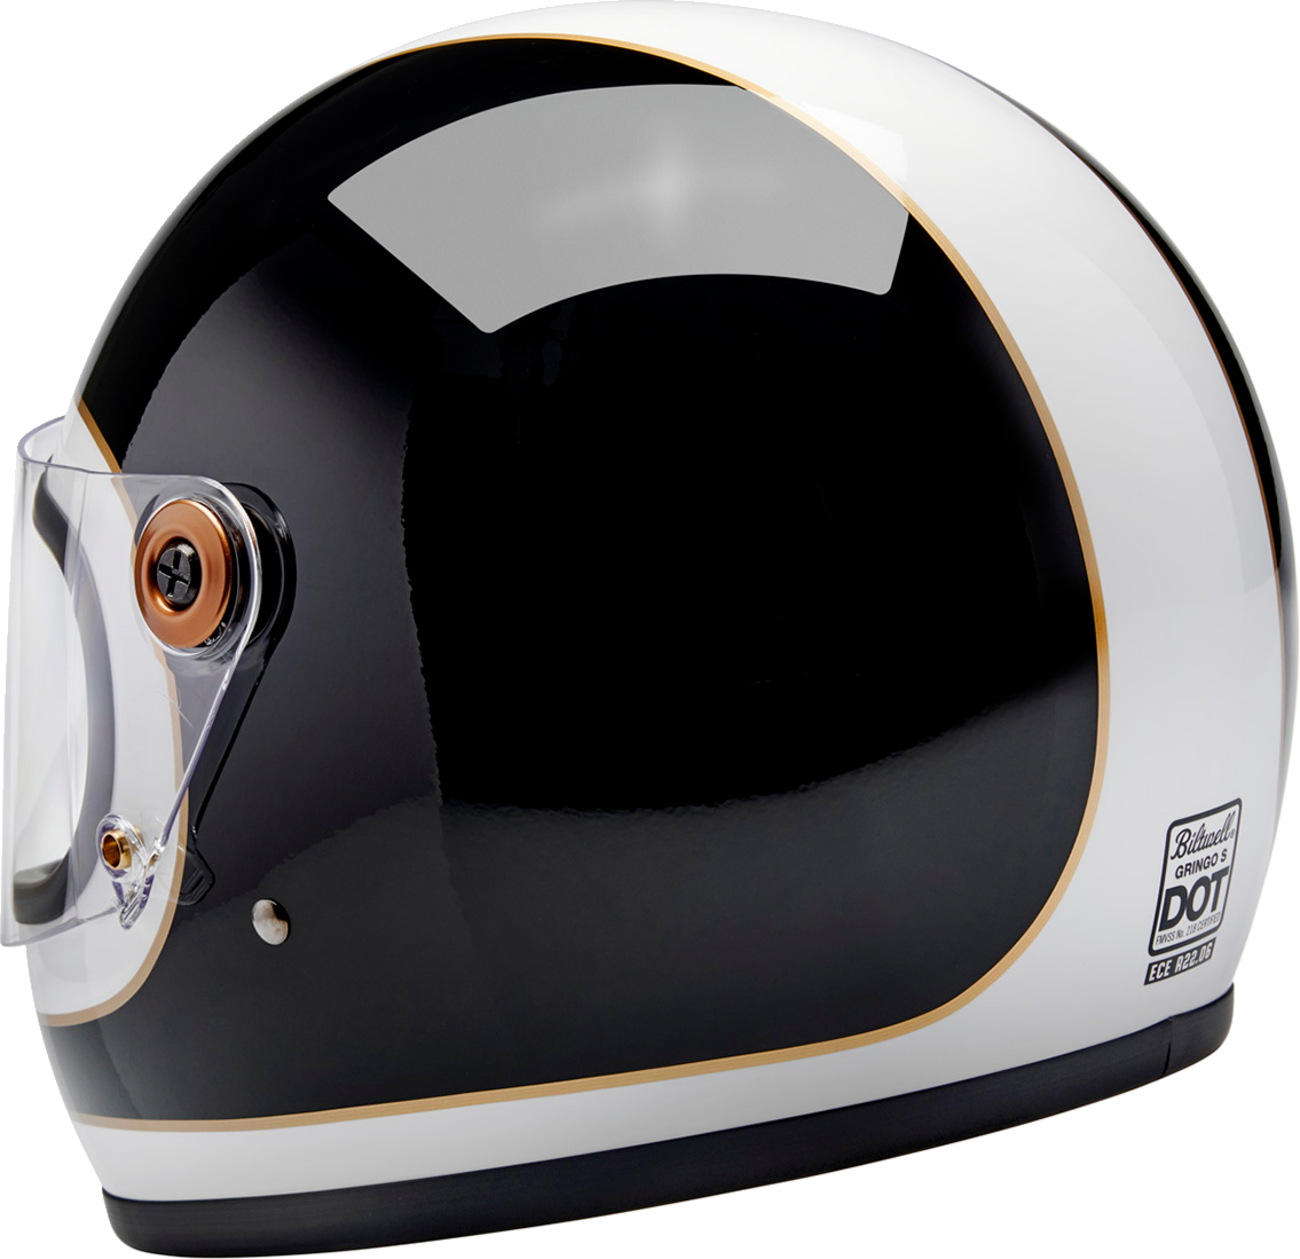 BILTWELL Gringo S Helmet - Gloss White/Black Tracker - Medium 1003-566-503